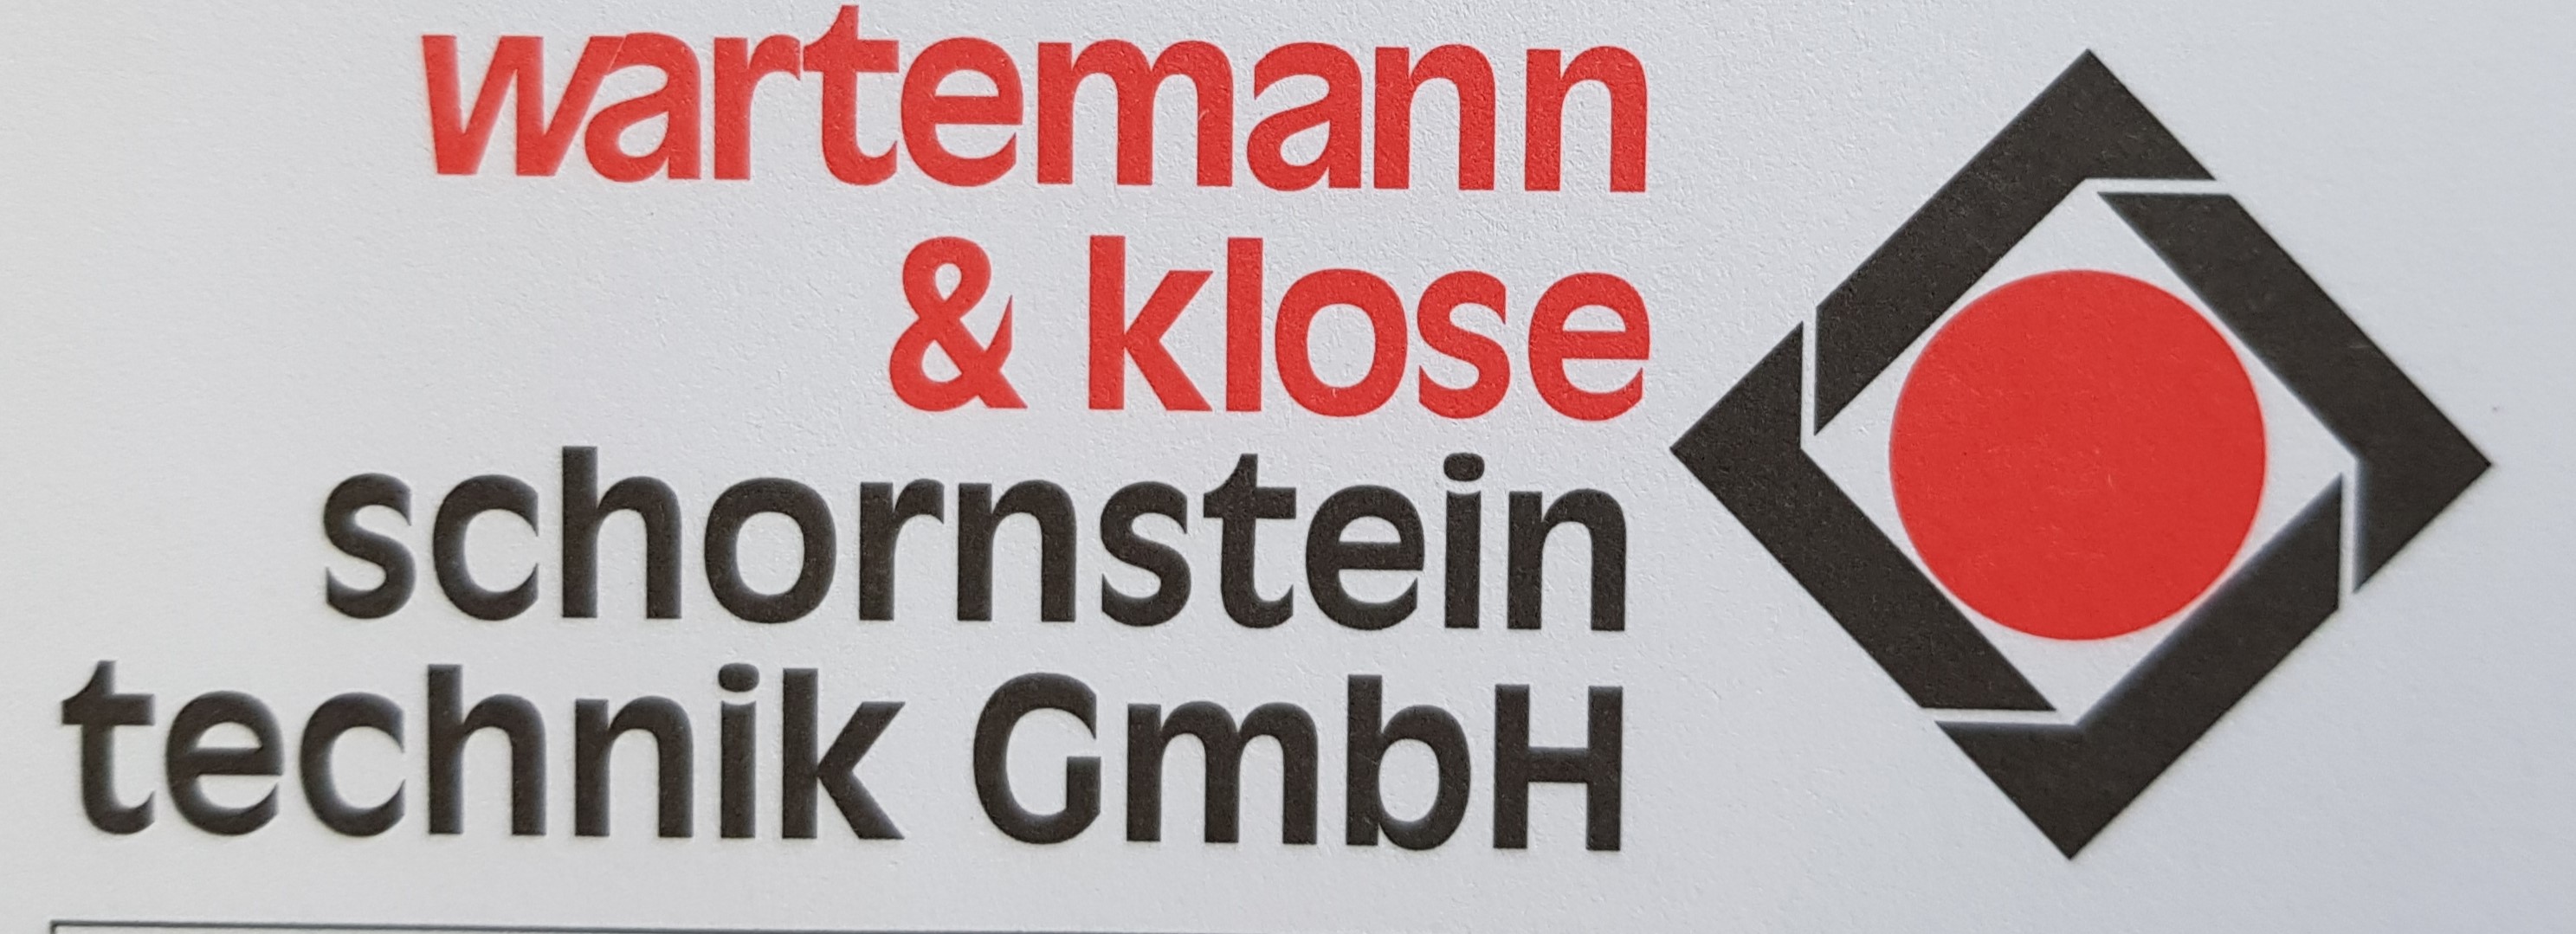 Wartemann & Klose Schornsteintechnik GmbH in Westerkappeln - Logo